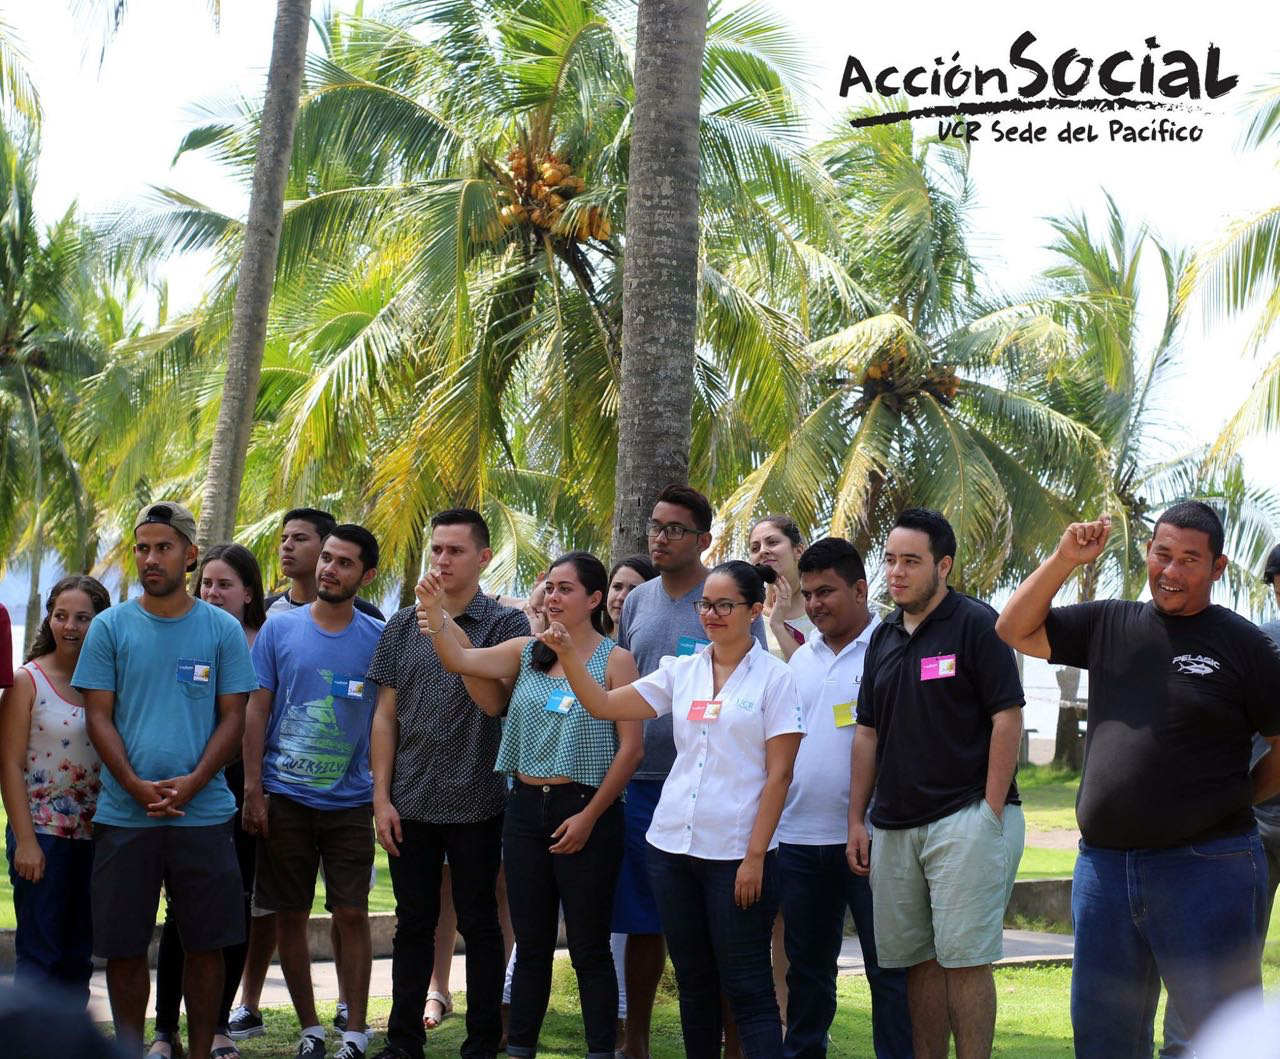 El Foro de Acción Social inició en agosto de 2017 y culminó la última semana de abril de 2018. Se realizaron, en total, 46 encuentros, de los cuales 10 fueron encuentros comunitarios con poblaciones de proyectos de Acción Social en Térraba, Golfito, Caribe, Turrubares, Sierpe-Osa, Puntarenas, y con personas de la Asociación de artesanos(as), de los Centros Infantiles Universitarios, del proyecto de Economía Social Solidaria, de las televisoras locales y regionales, y de los proyectos de la Escuela de Nut